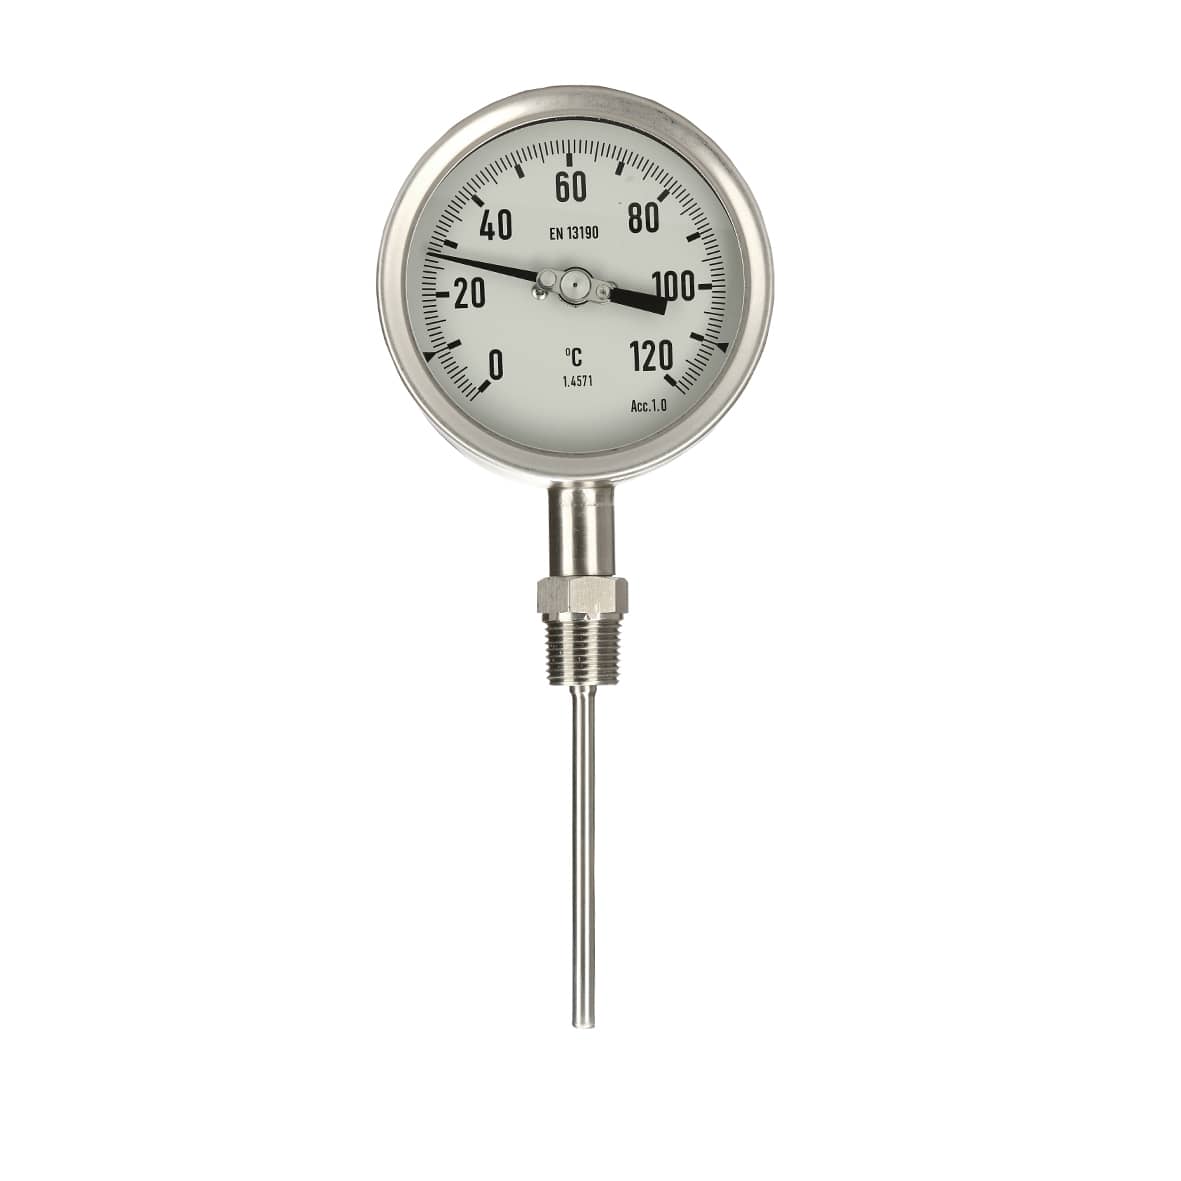 bimetallic thermometer for sale